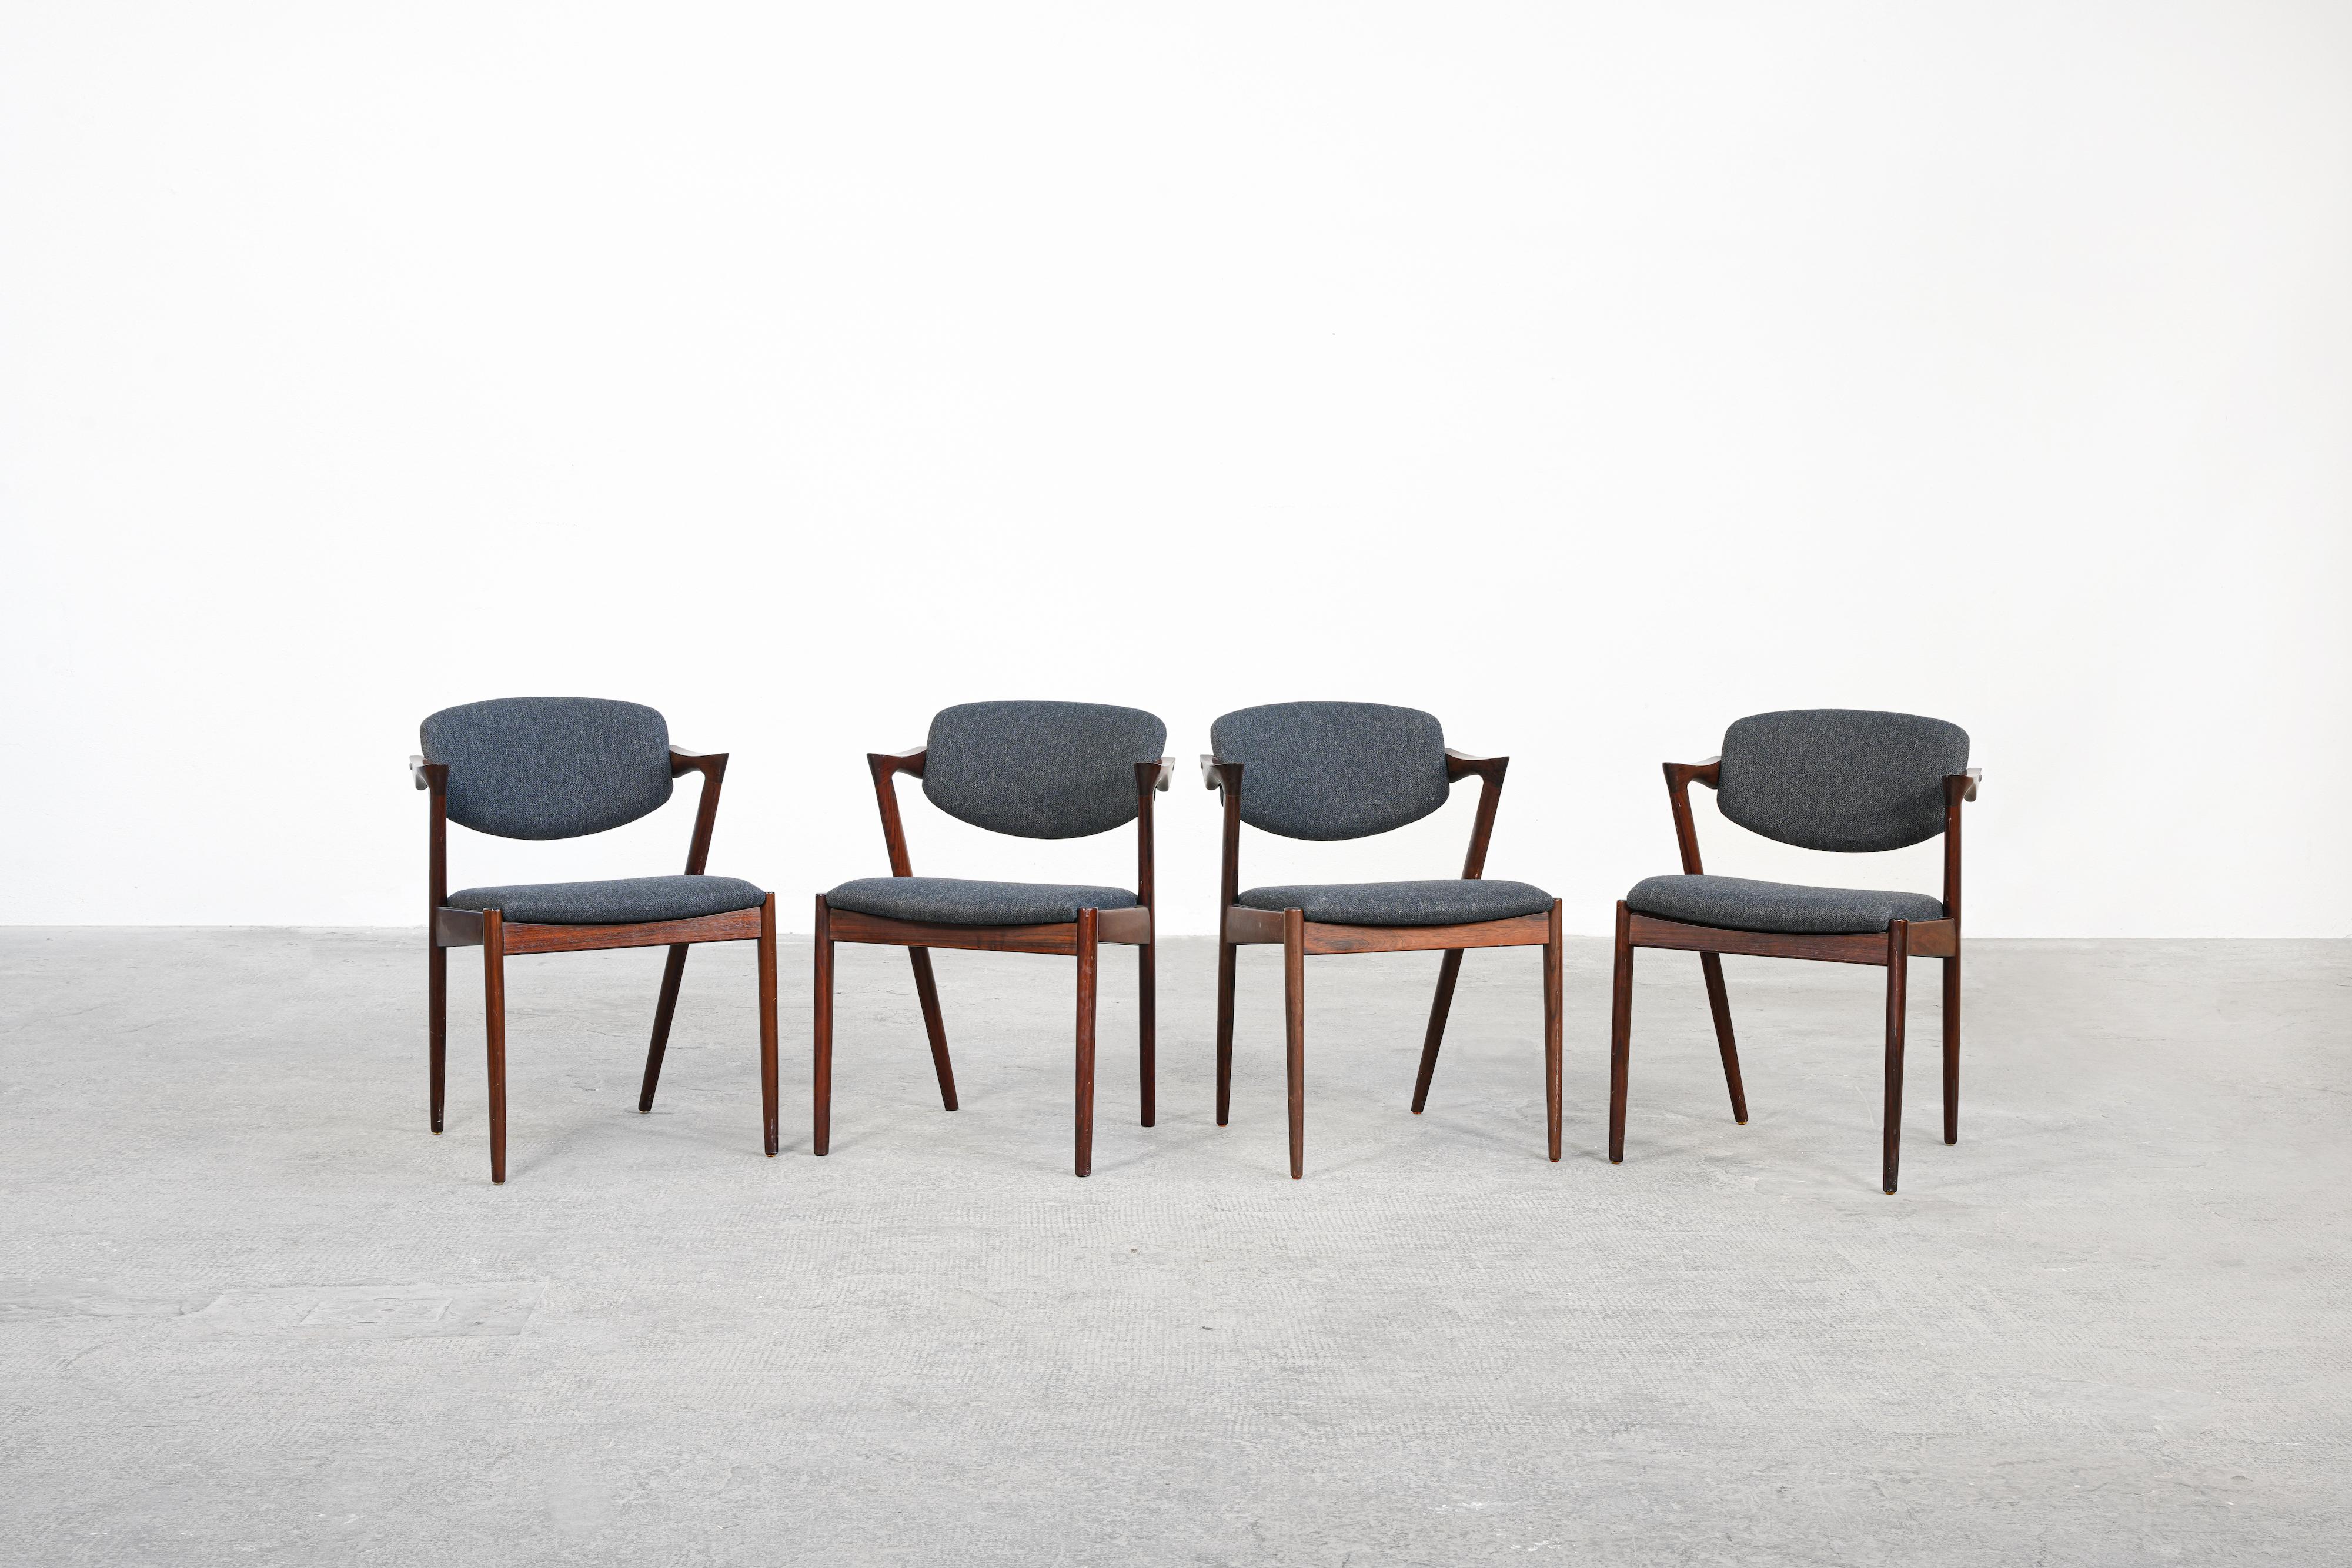 Très bel ensemble de quatre chaises de salle à manger conçu par Kai Kristiansen et produit par V. Schou Andersen, Danemark en 1964. Les chaises sont en très bon état, elles ont toutes été récemment retapissées avec un tissu de haute qualité en gris